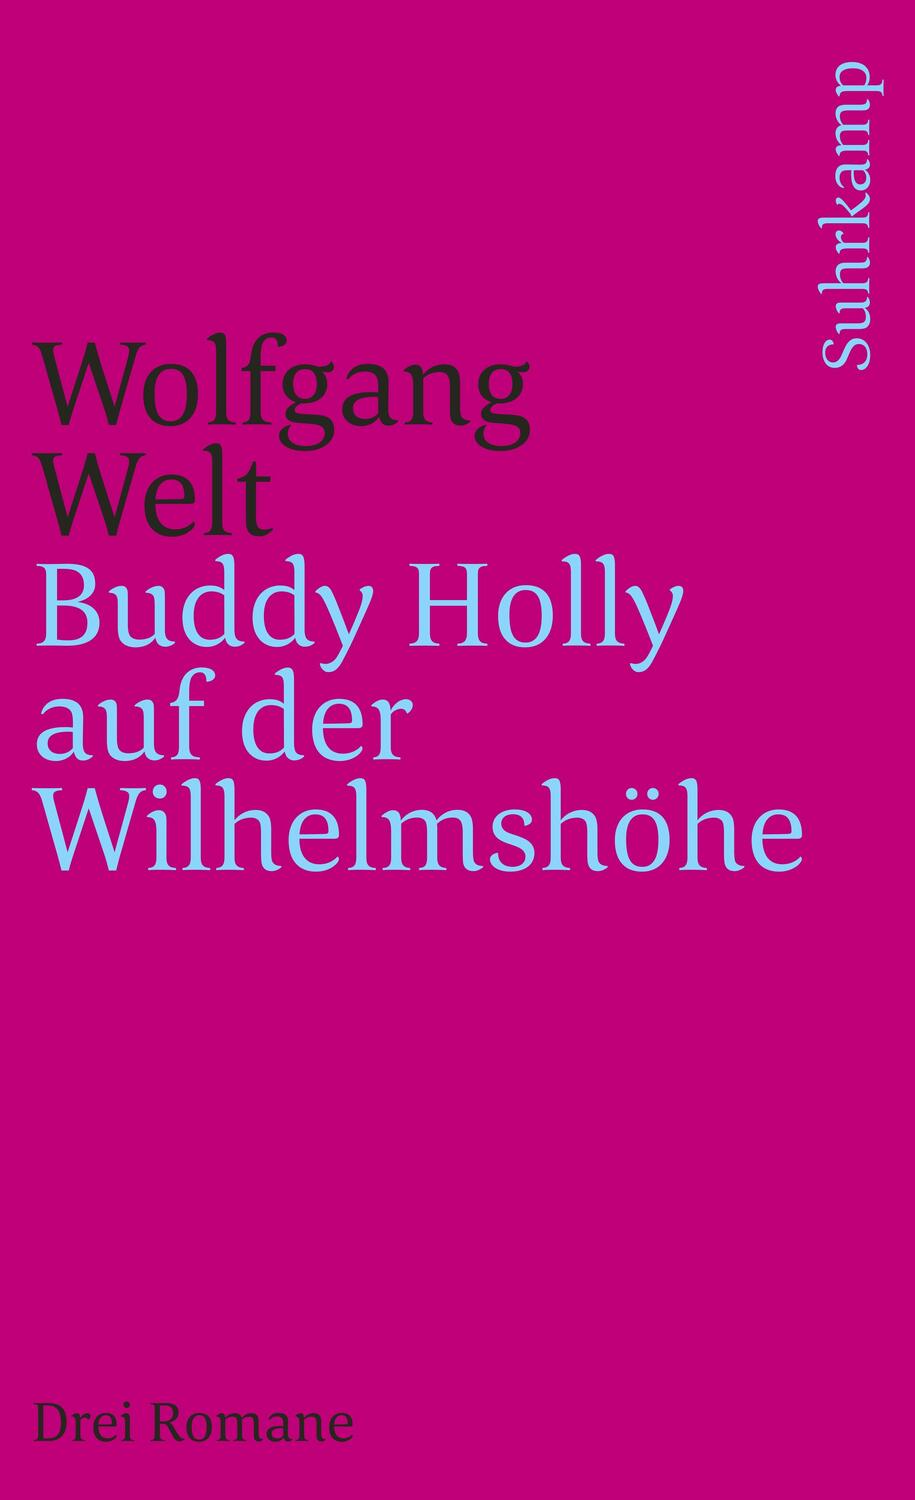 Buddy Holly auf der Wilhelmshöhe - Welt, Wolfgang